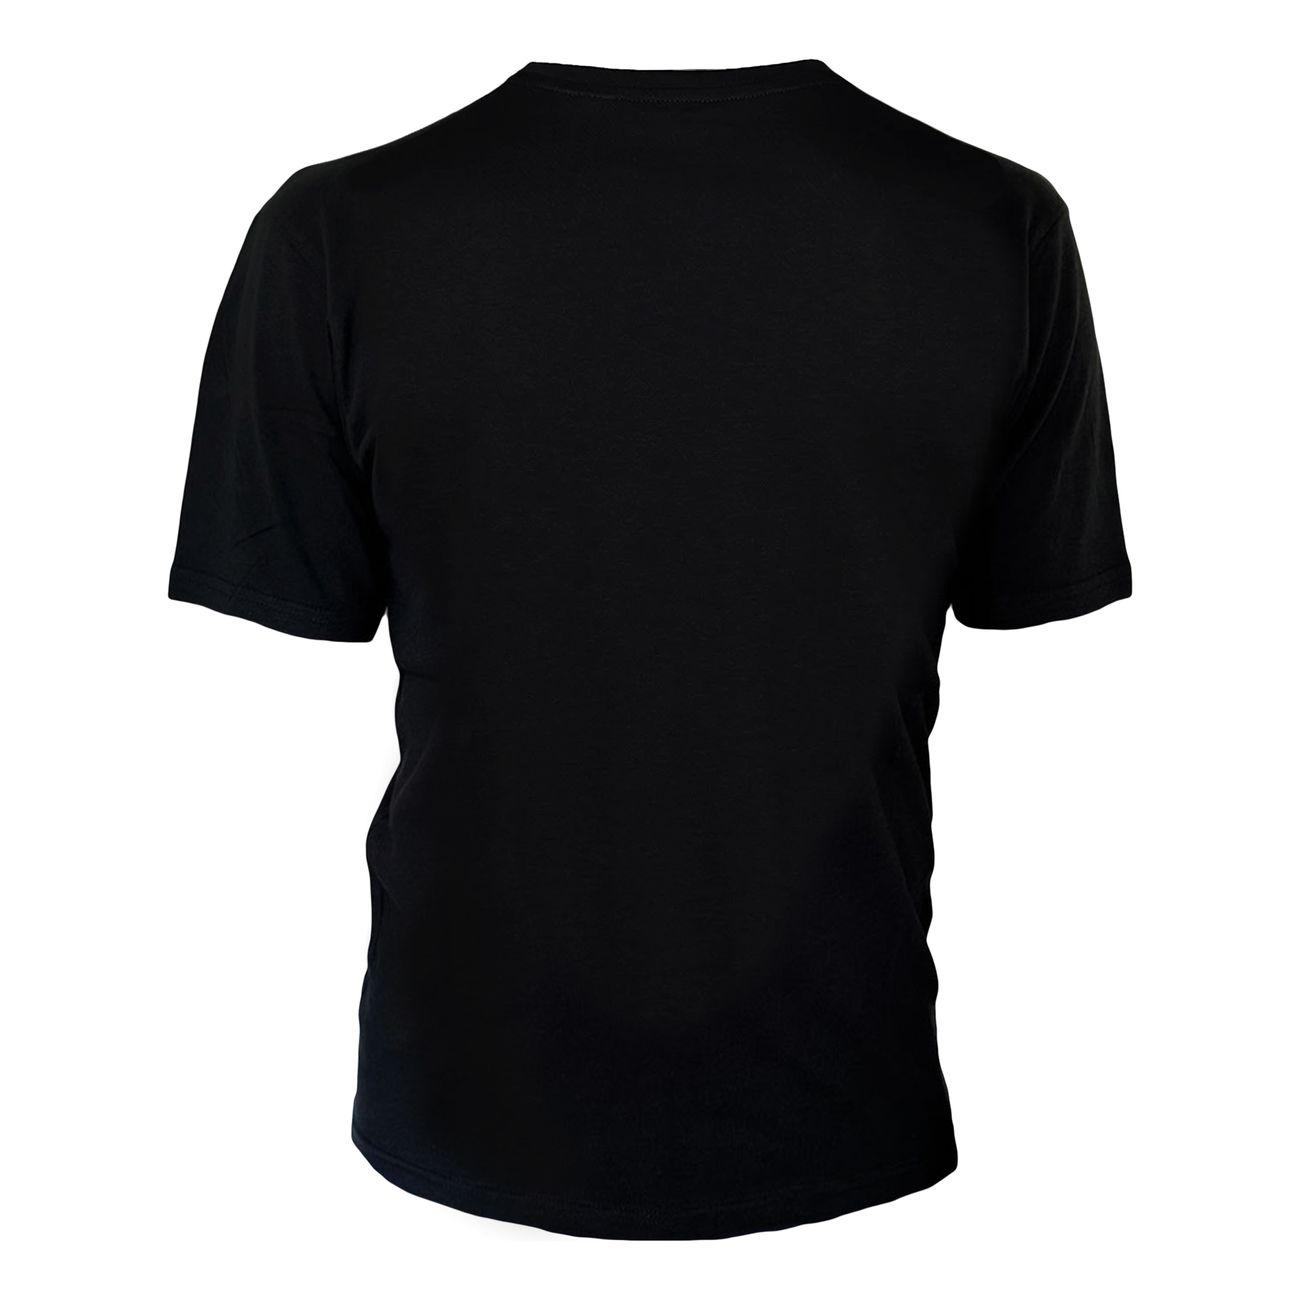 tuxedo-t-shirt-97426-5